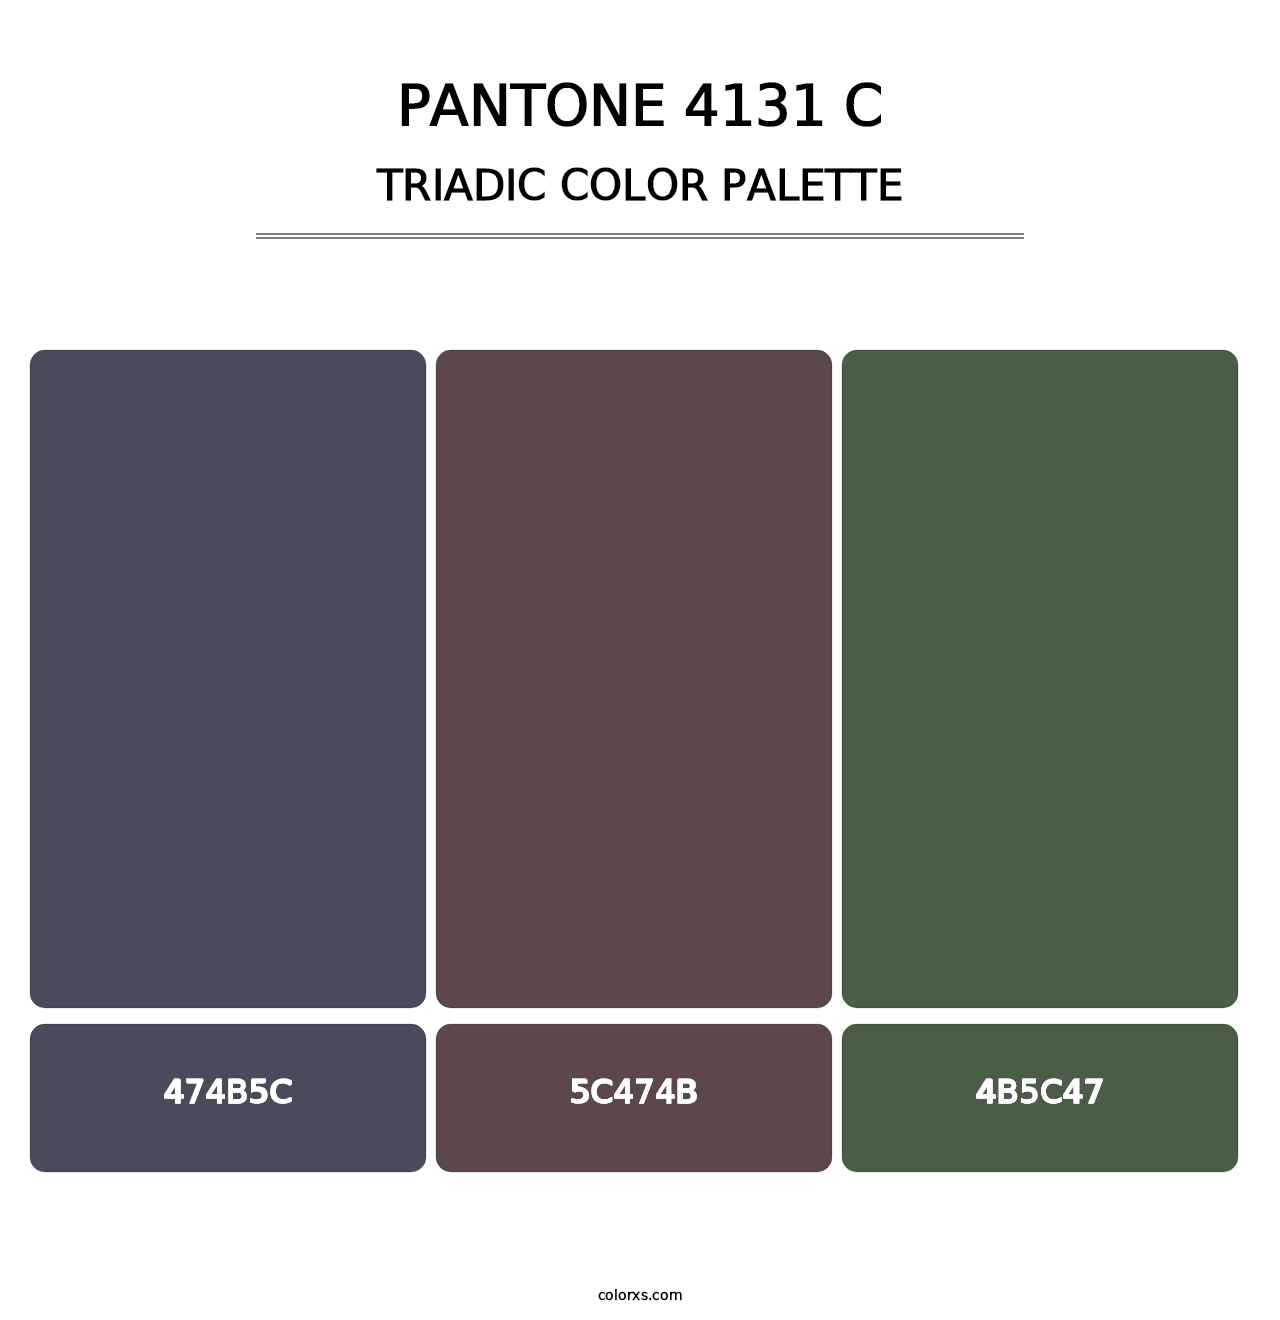 PANTONE 4131 C - Triadic Color Palette